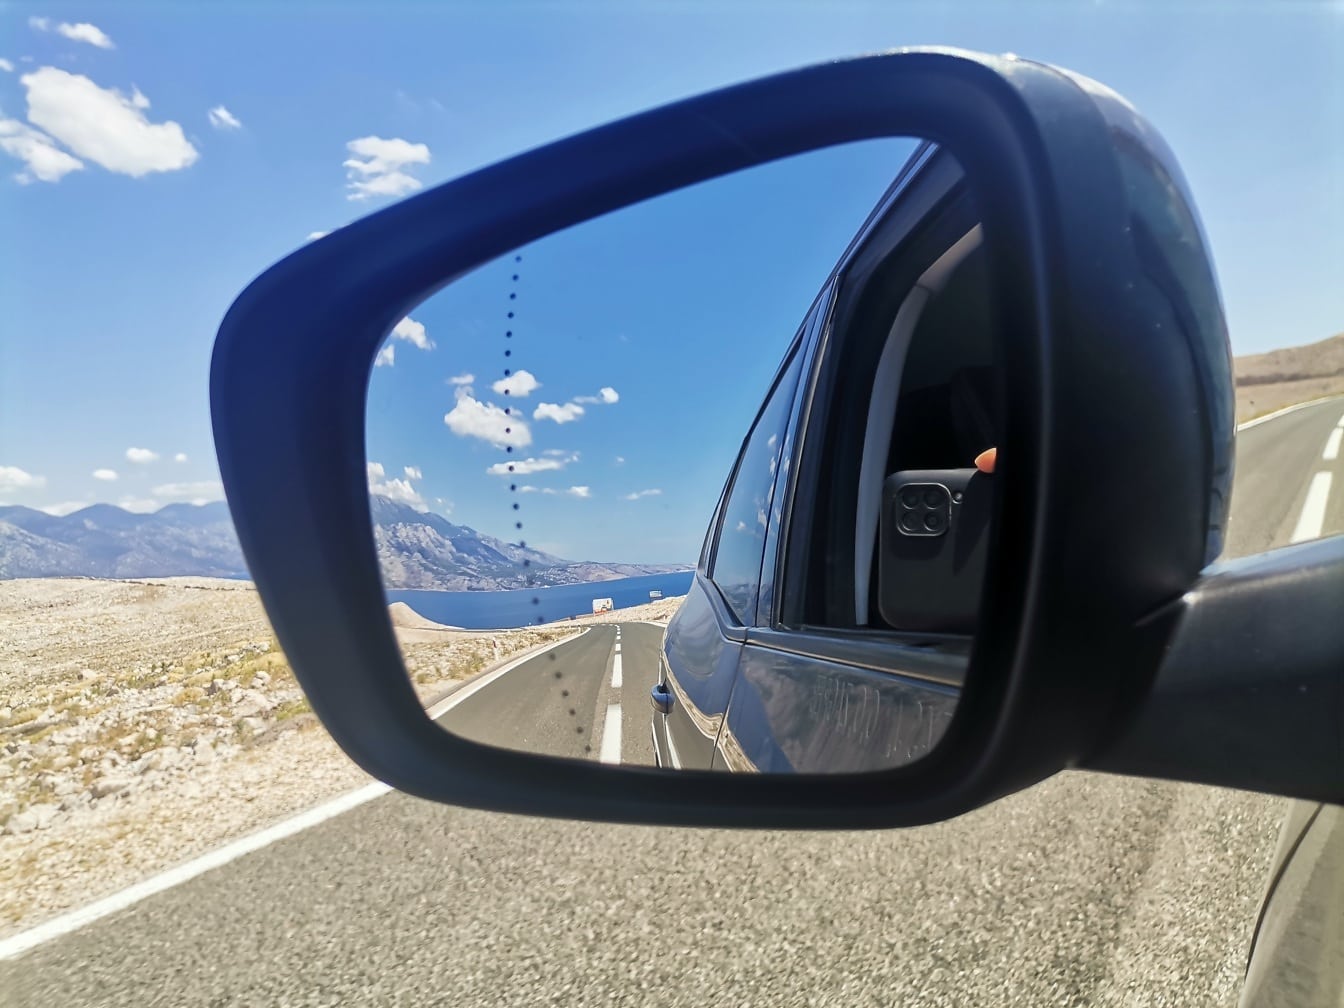 Reflexia asfaltului, a drumului și a peisajului marin în oglinda mașinii